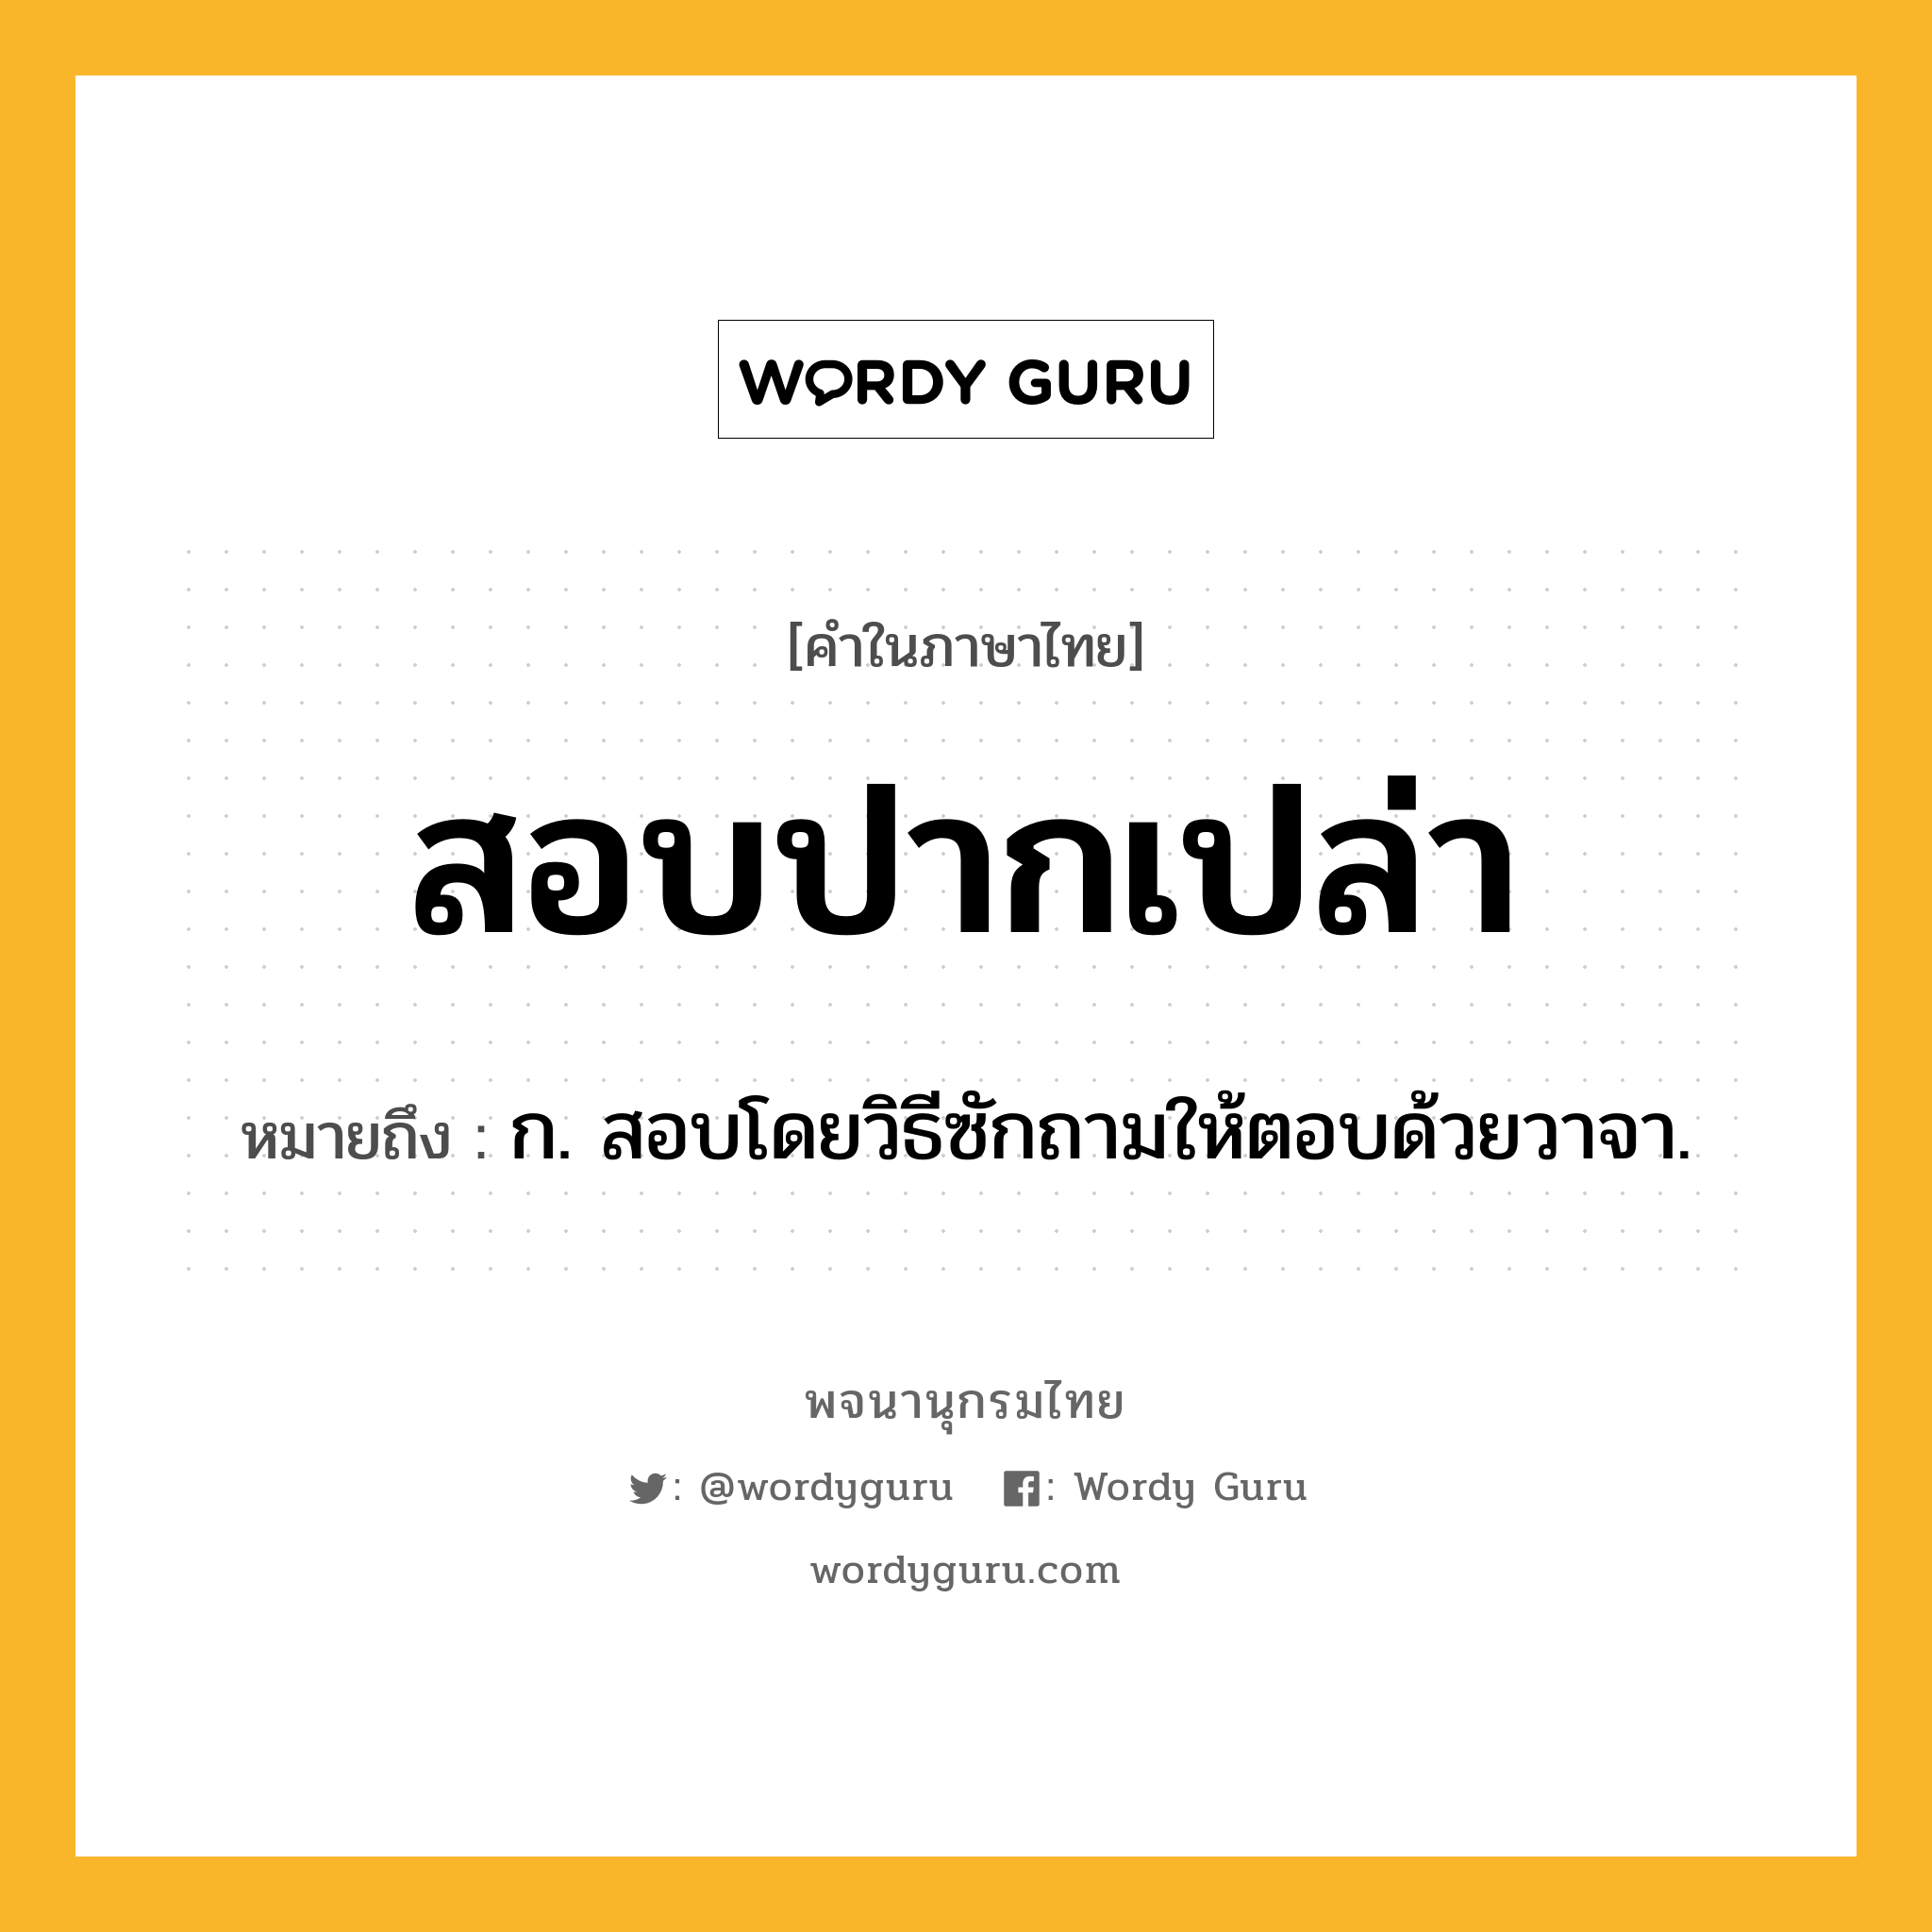 สอบปากเปล่า ความหมาย หมายถึงอะไร?, คำในภาษาไทย สอบปากเปล่า หมายถึง ก. สอบโดยวิธีซักถามให้ตอบด้วยวาจา.